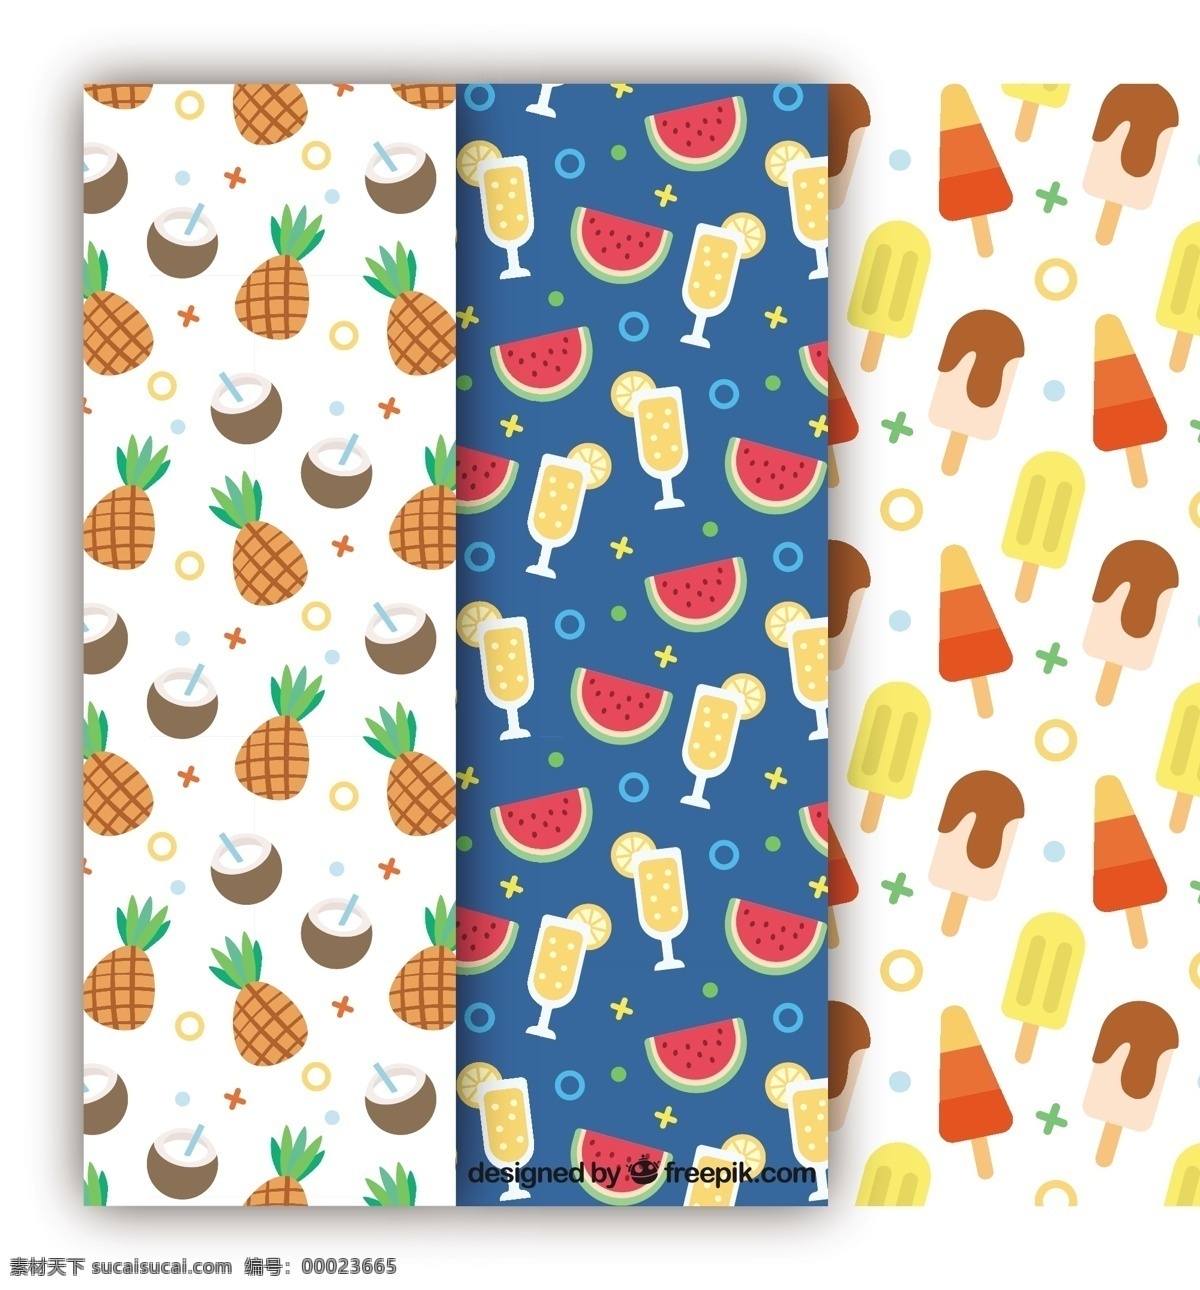 冰淇淋 夏日 水果 装饰 图案 背景 夏季 色彩 节日 平面 冰 饮料 丰富多彩 无缝的图案 平面设计 椰子 菠萝